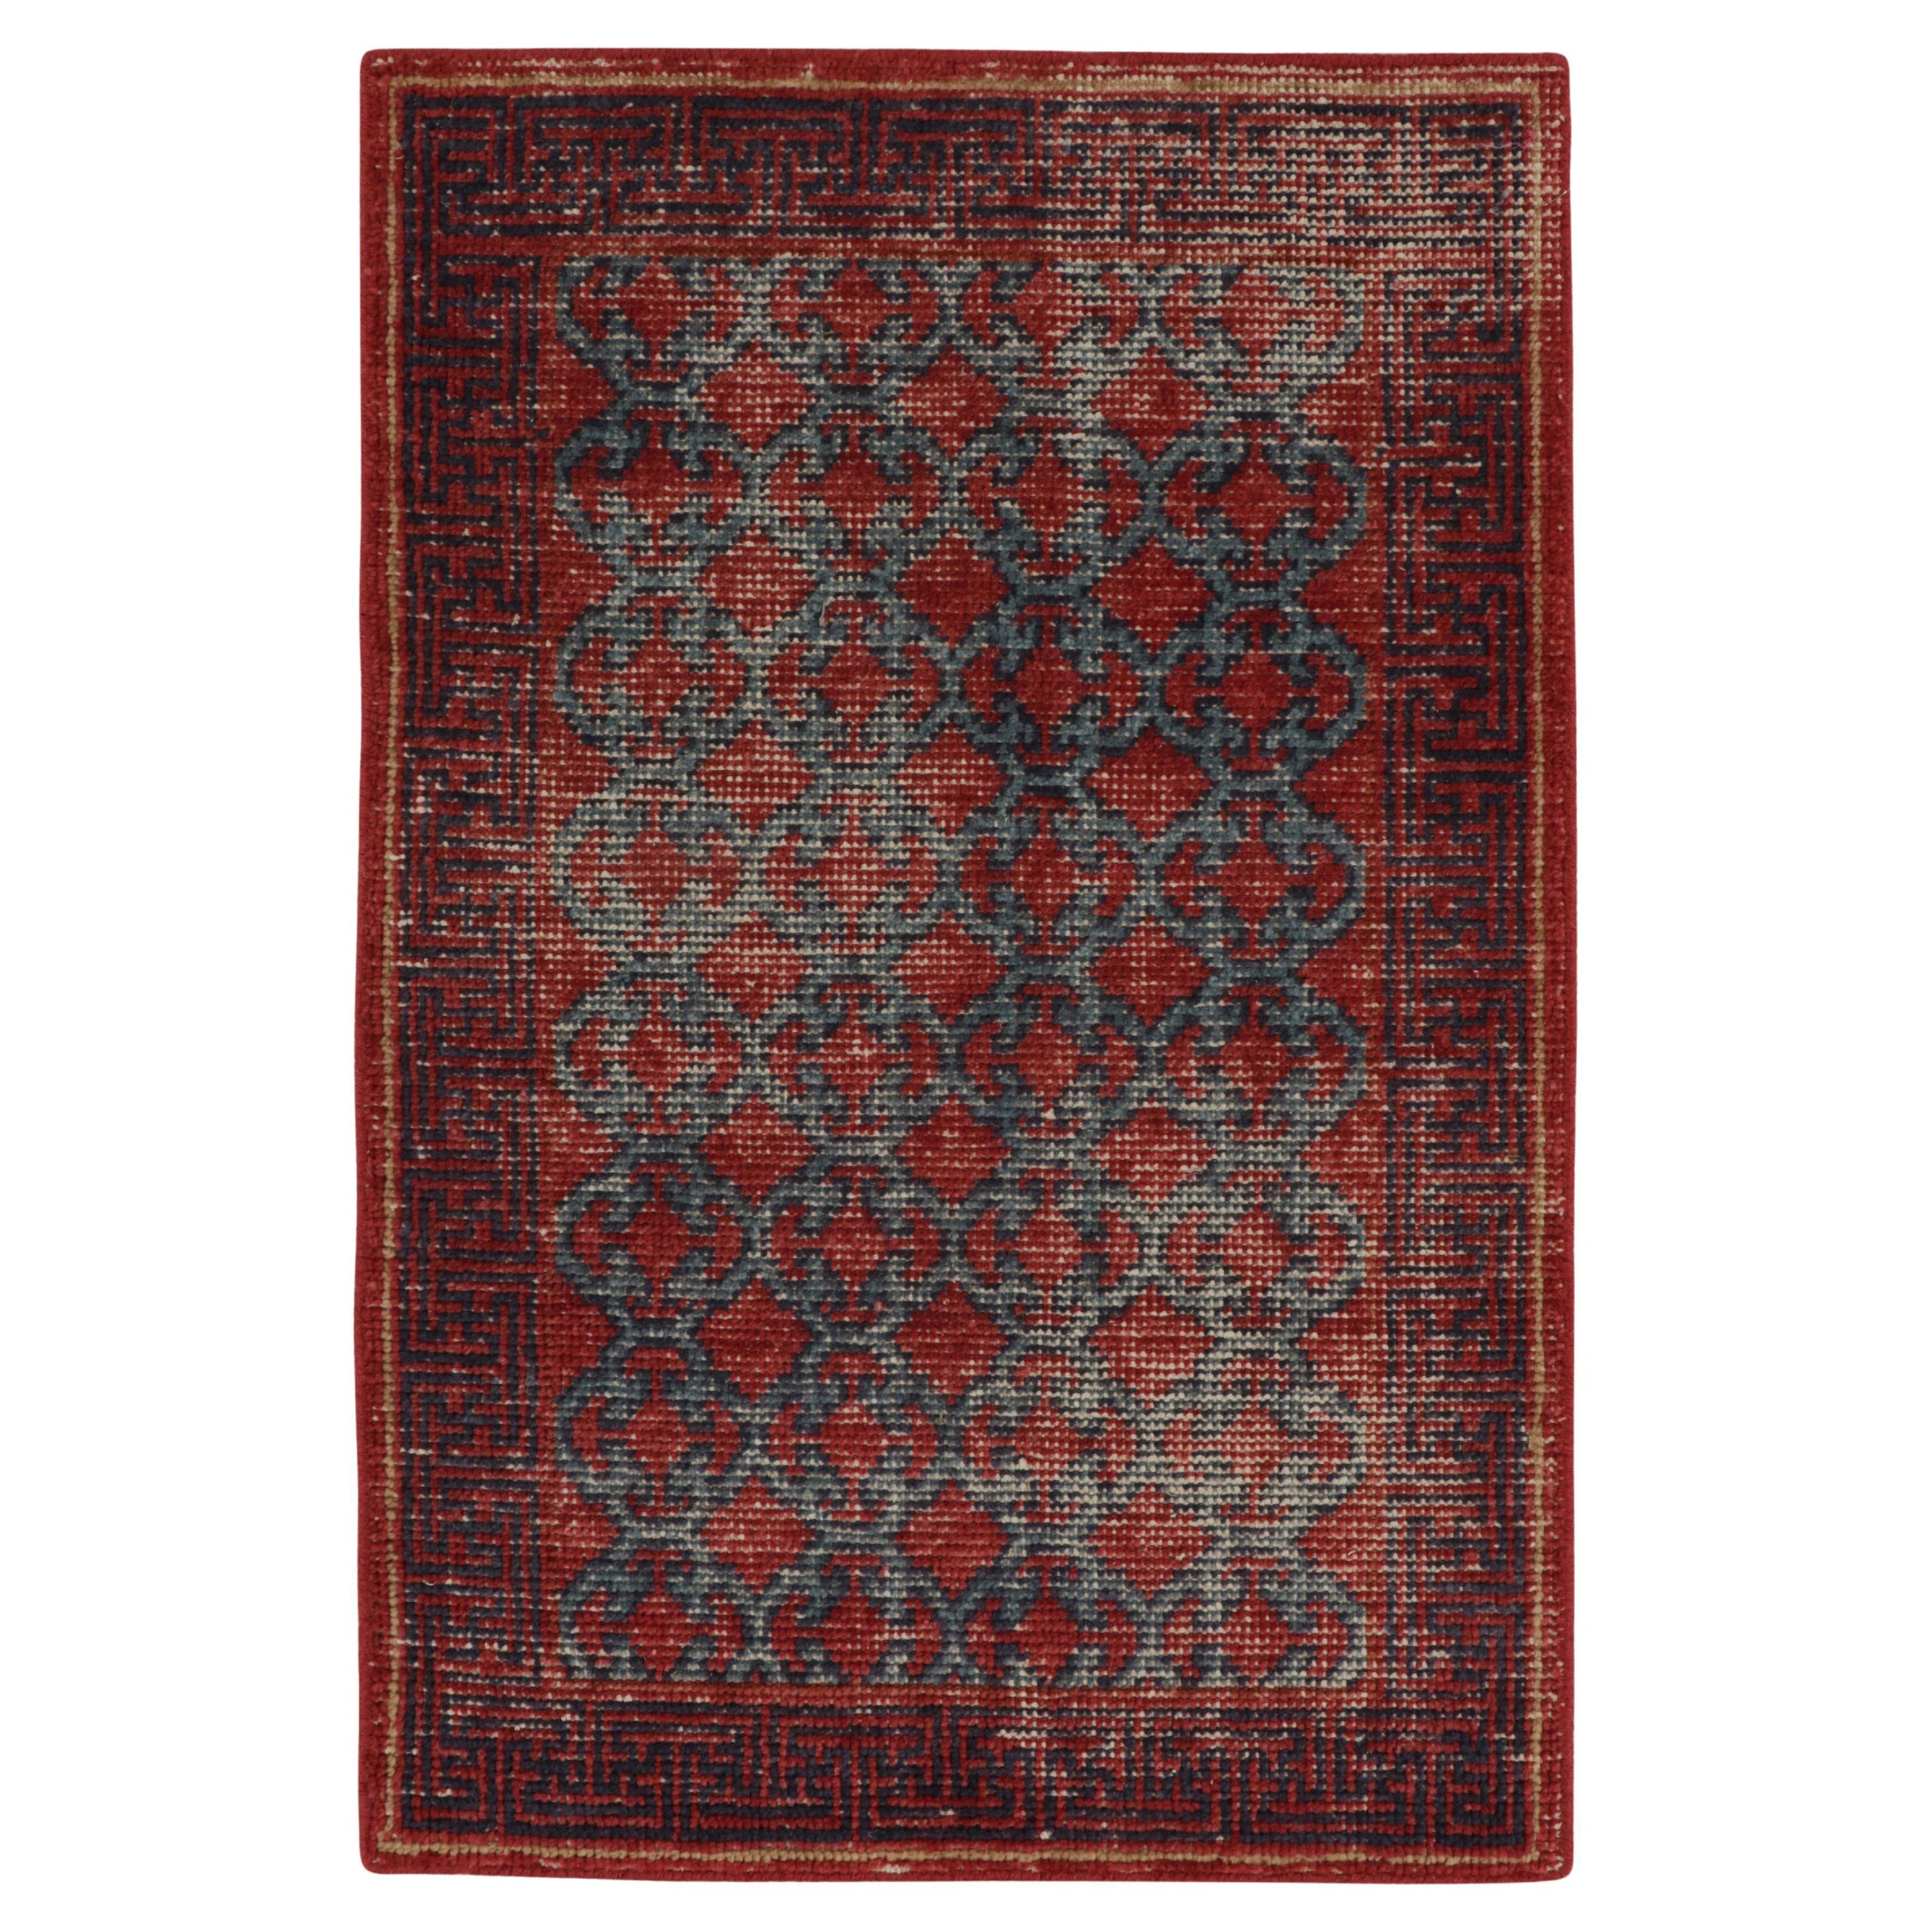 Rug & Kilim's Distressed Khotan Style Teppich mit rotem und blauem Spalier-Muster